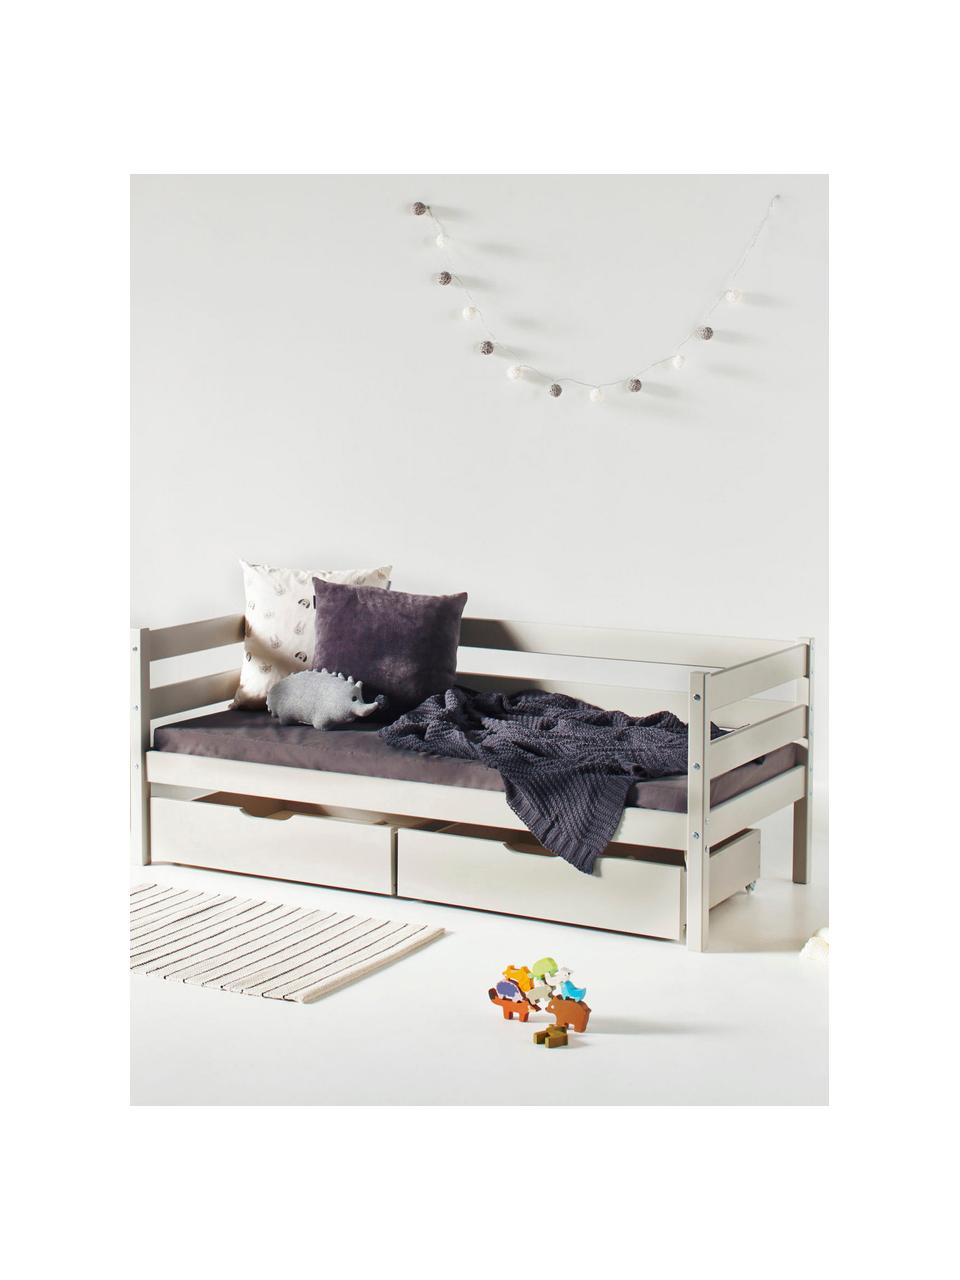 Dětská postel z borovicového dřeva Eco Comfort, 70 x 160 cm, Masivní borovicové dřevo, certifikace FSC, překližka, Borovicové dřevo, lakované greige barvou, Š 70 cm, D 160 cm